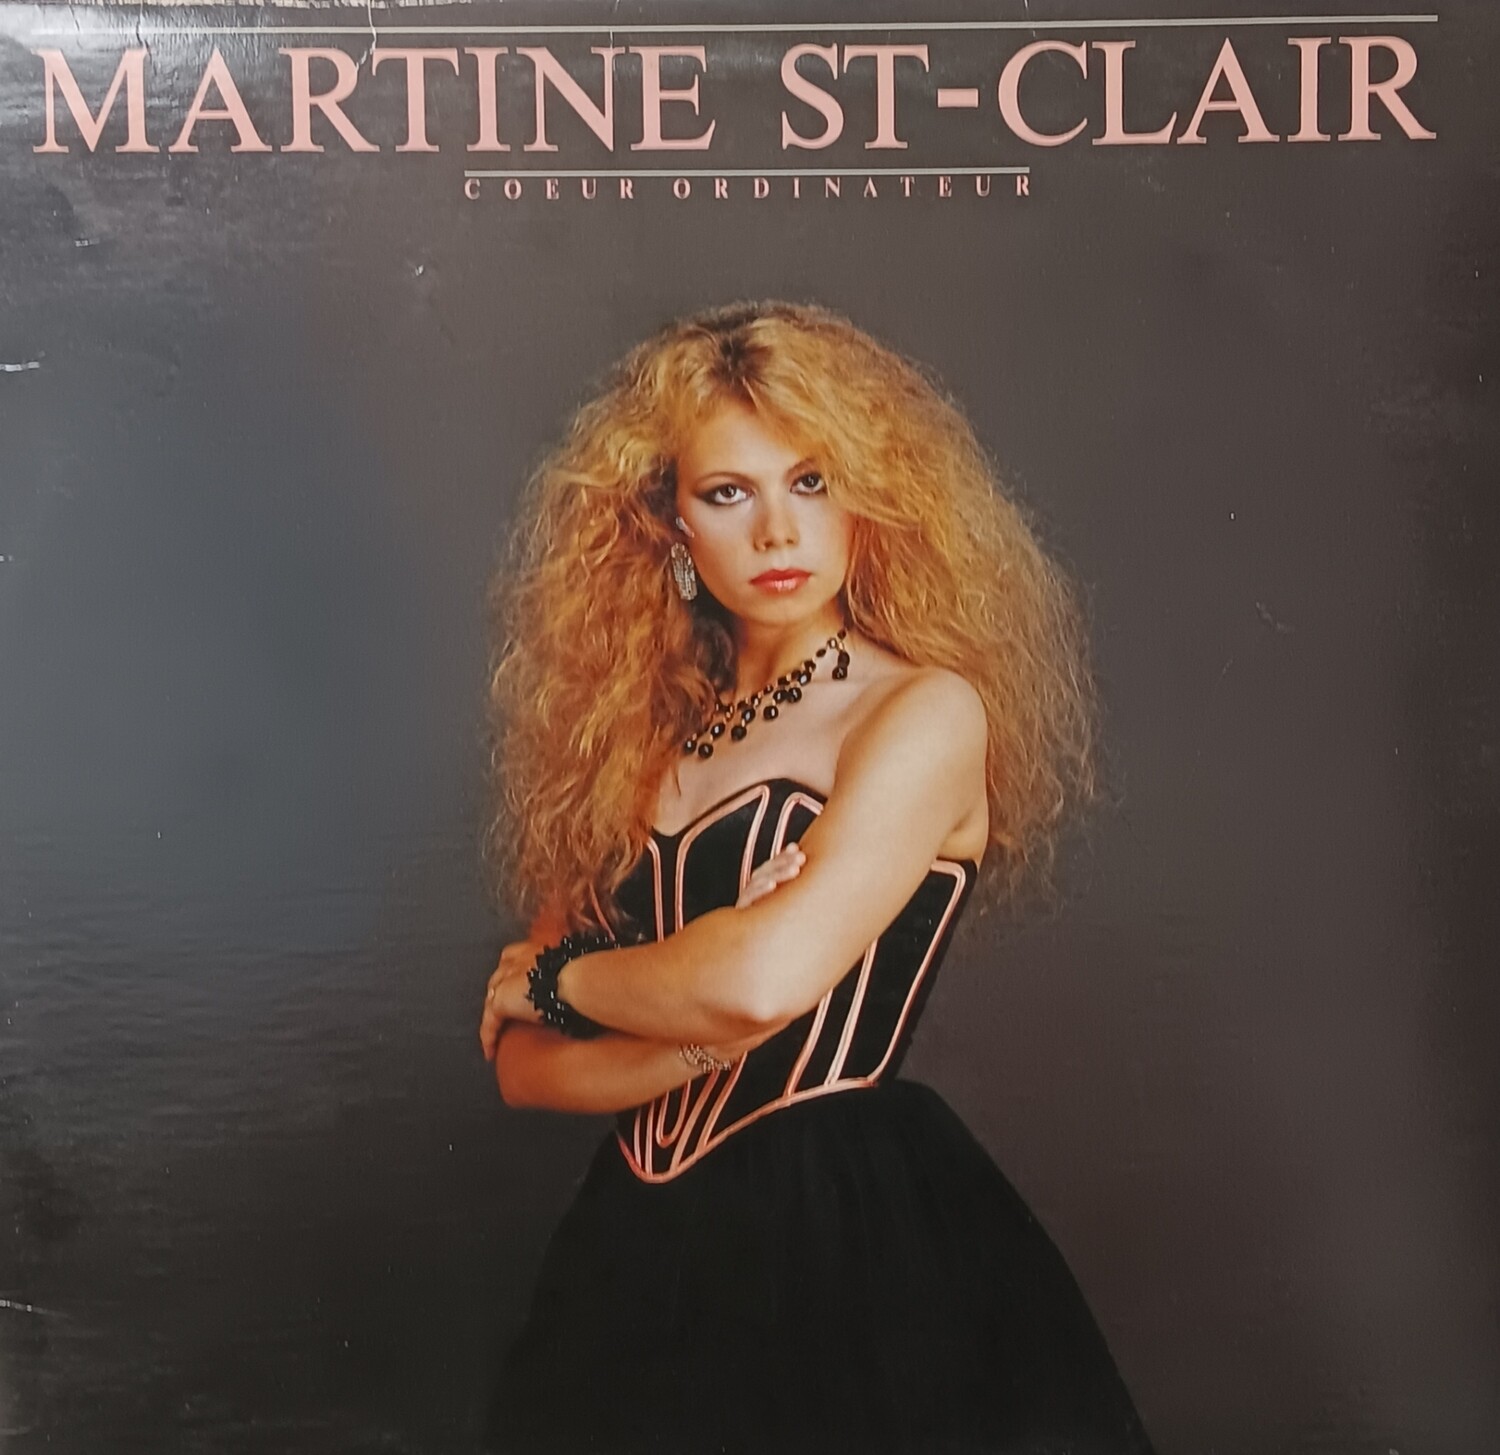 Martine St-Claire - Coeur Ordinateur